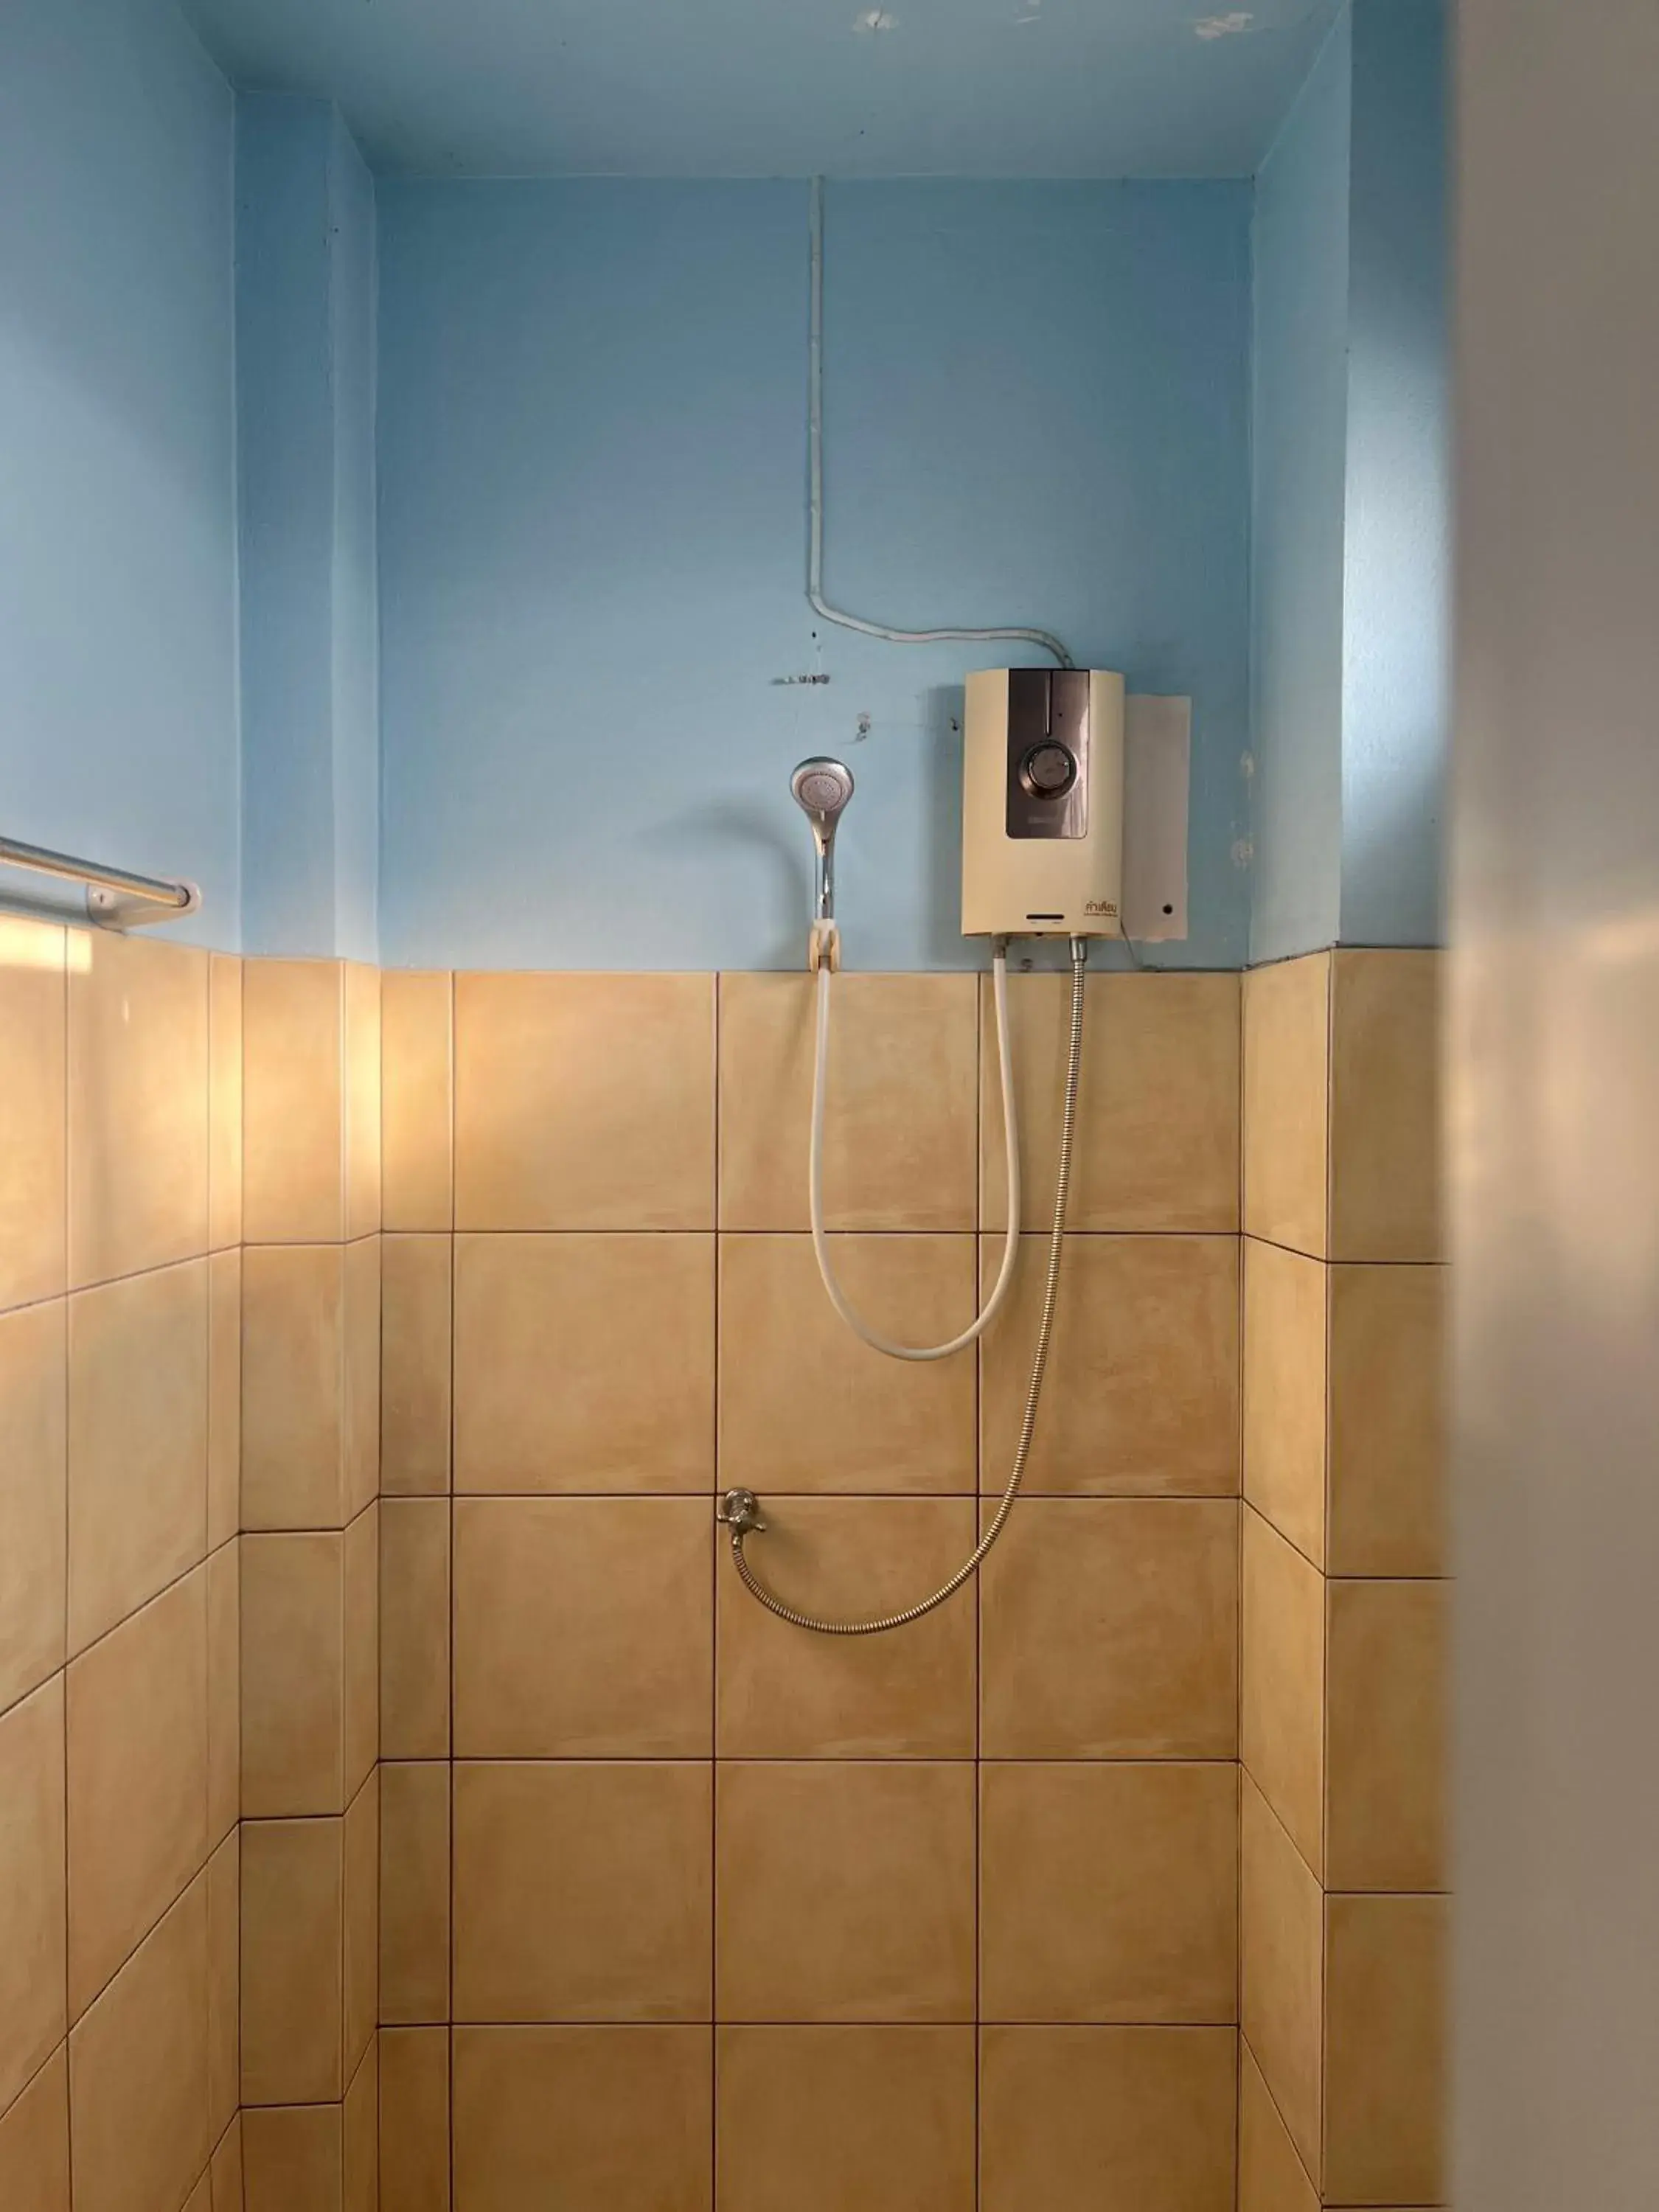 Shower, Bathroom in Srisomthai Hotel